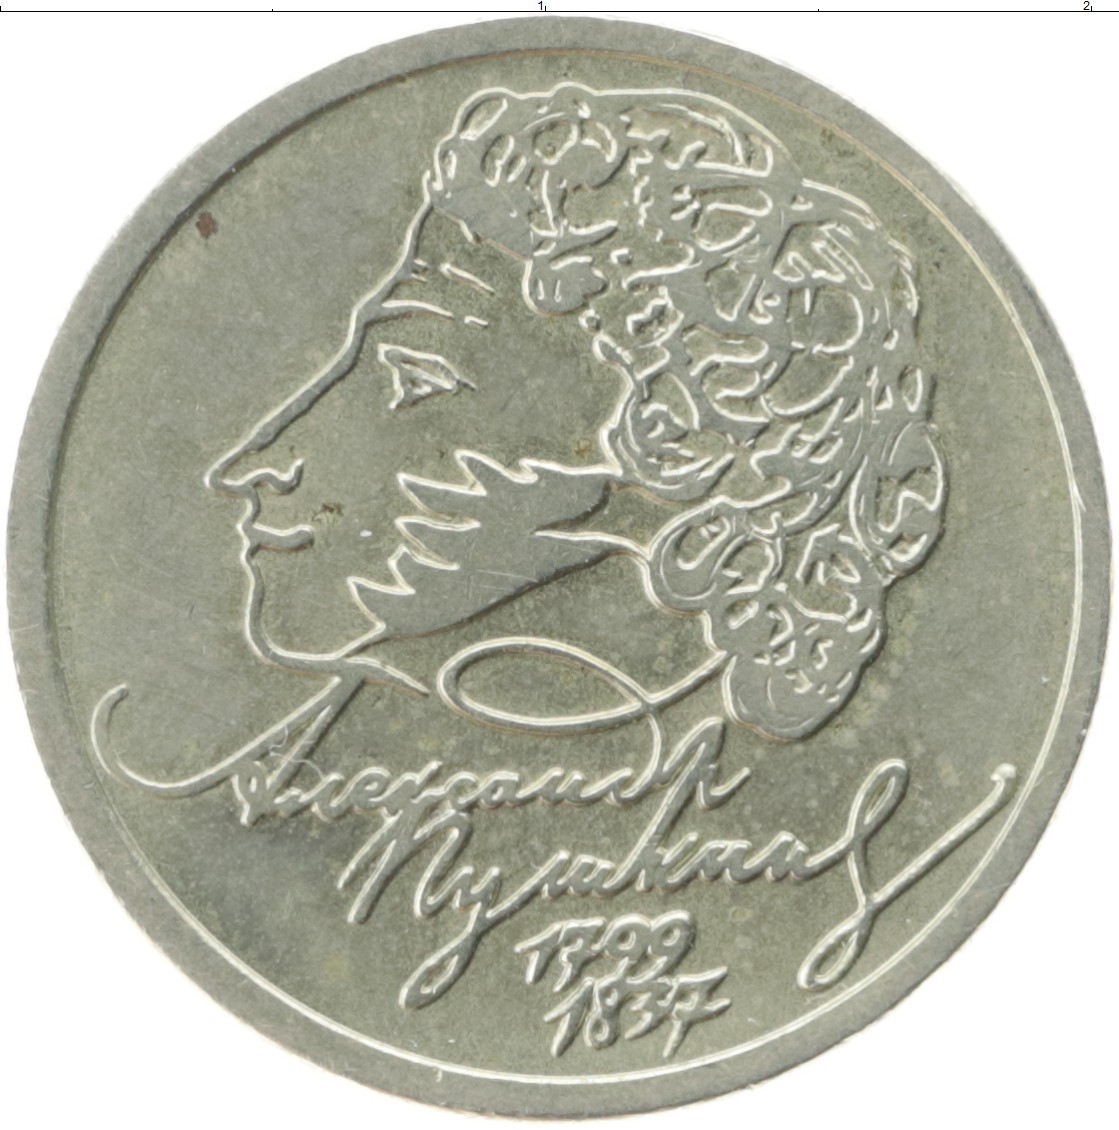 Монета Пушкин 1999